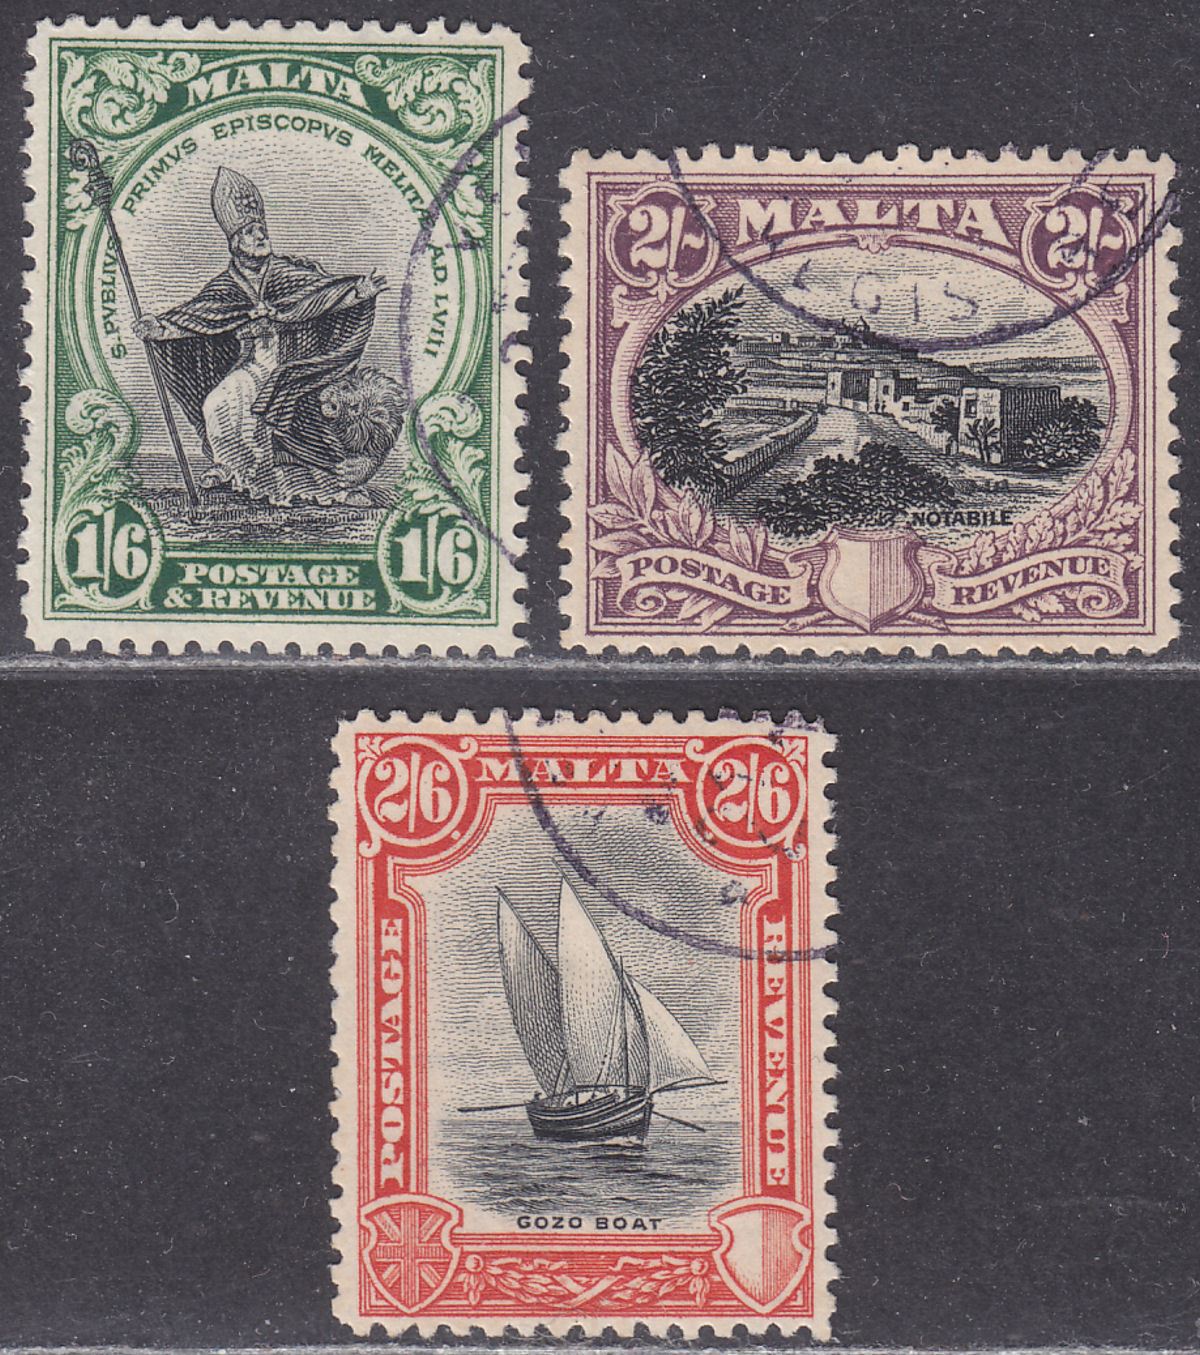 Malta 1930 KGV Postage and Revenue 1sh6d, 2sh, 2sh6d Used SG204-206 cat £122